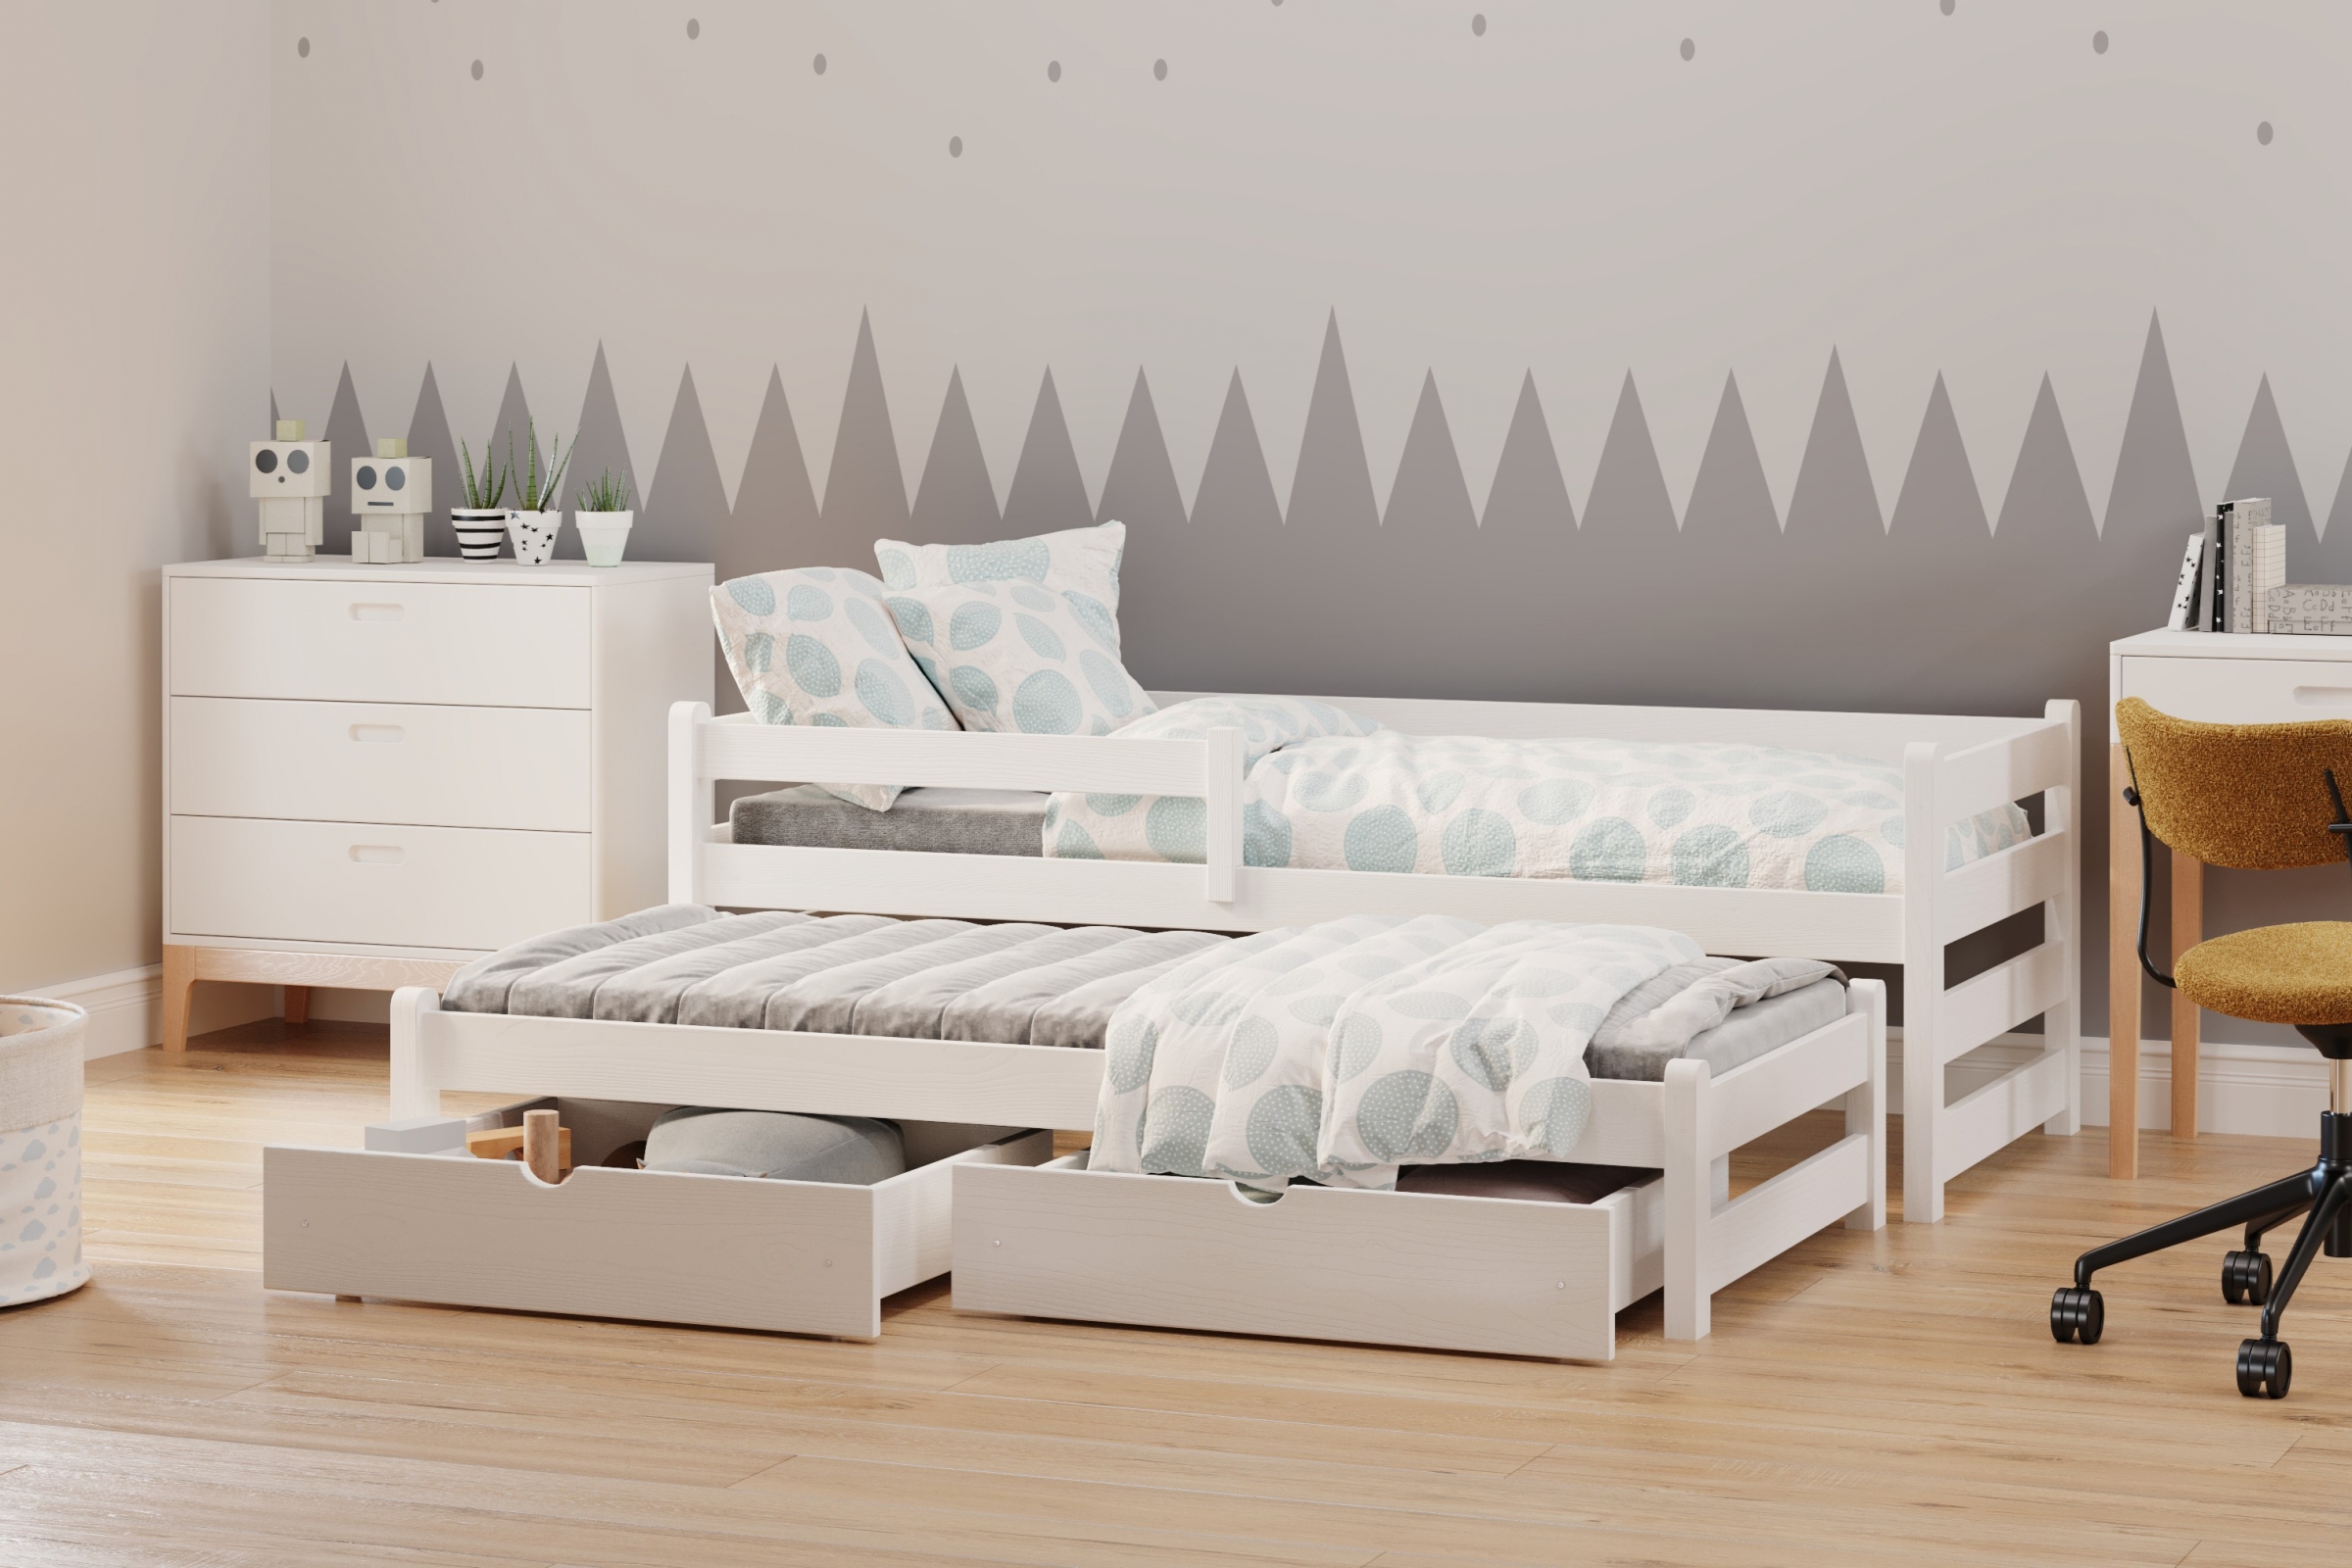 Detská posteľ prízemná s výsuvným lôžkom Alis DPV 001 - Biely, 90x180 Posteľ prízemná s výsuvným lôžkom Alis - Farba Biely - vizualizácia